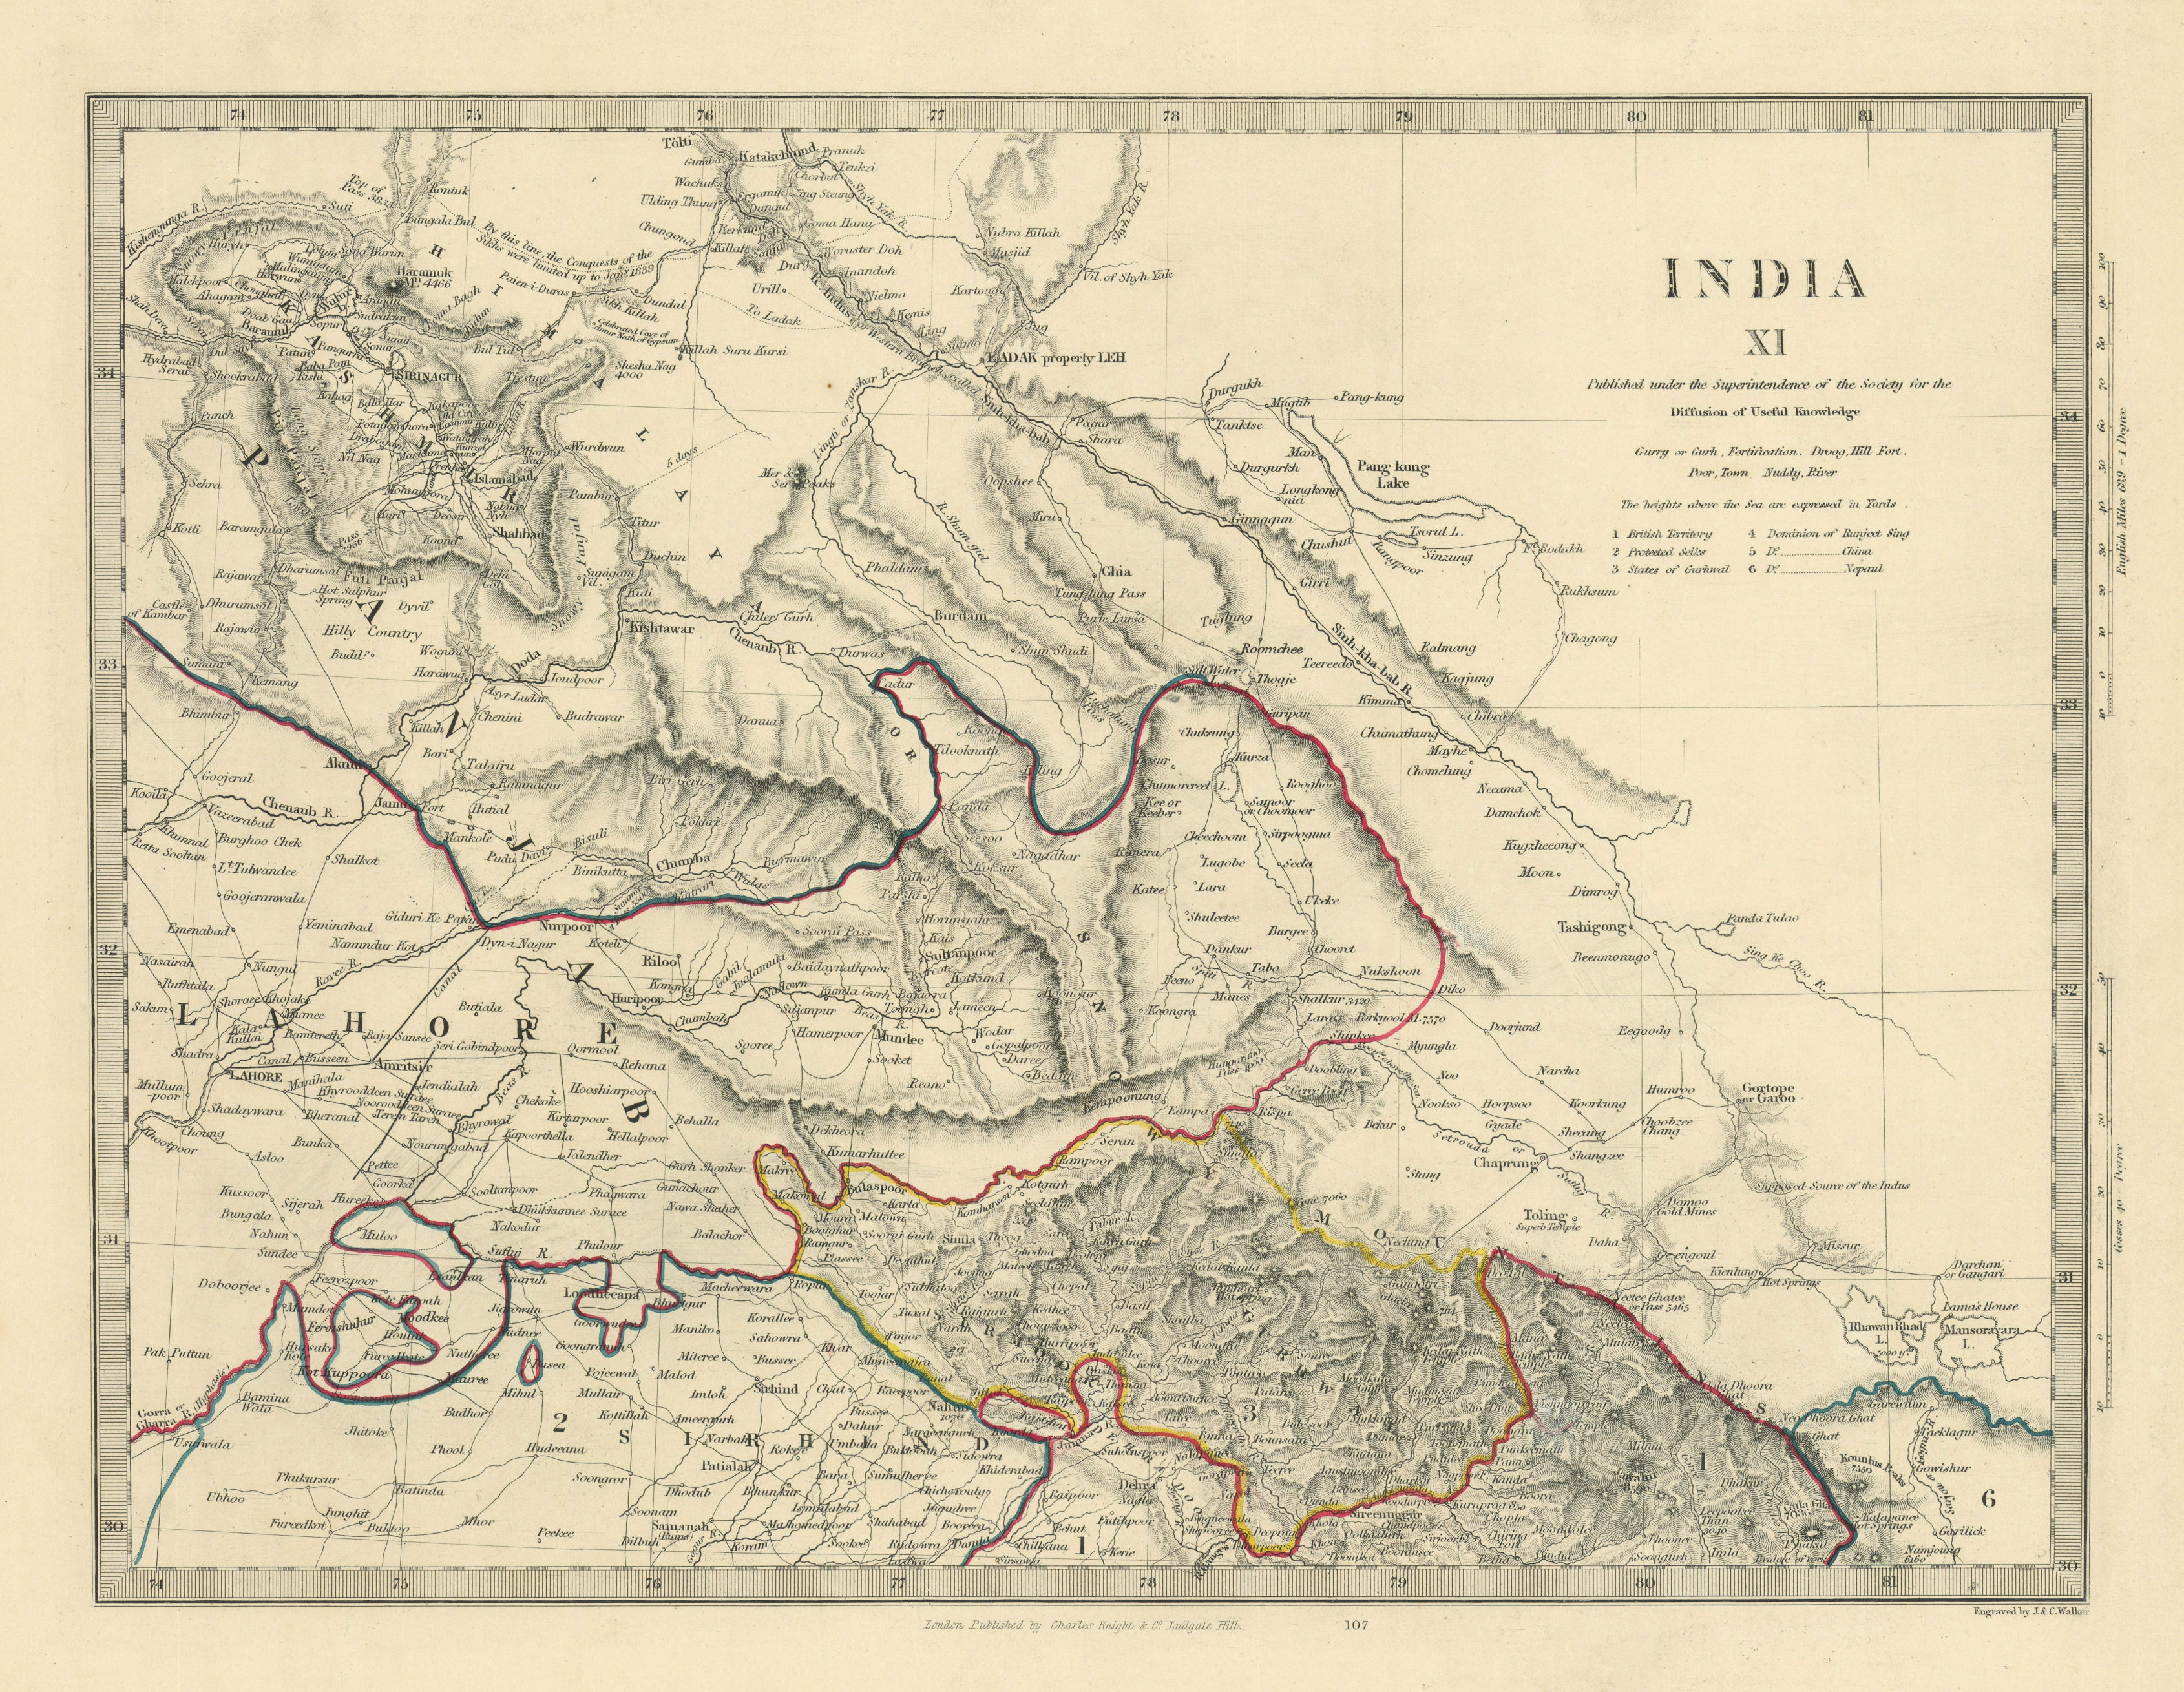 INDIA XI. PAKISTAN. Punjab Garhwal Lahore Sirhind Kashmir China. SDUK 1851 map